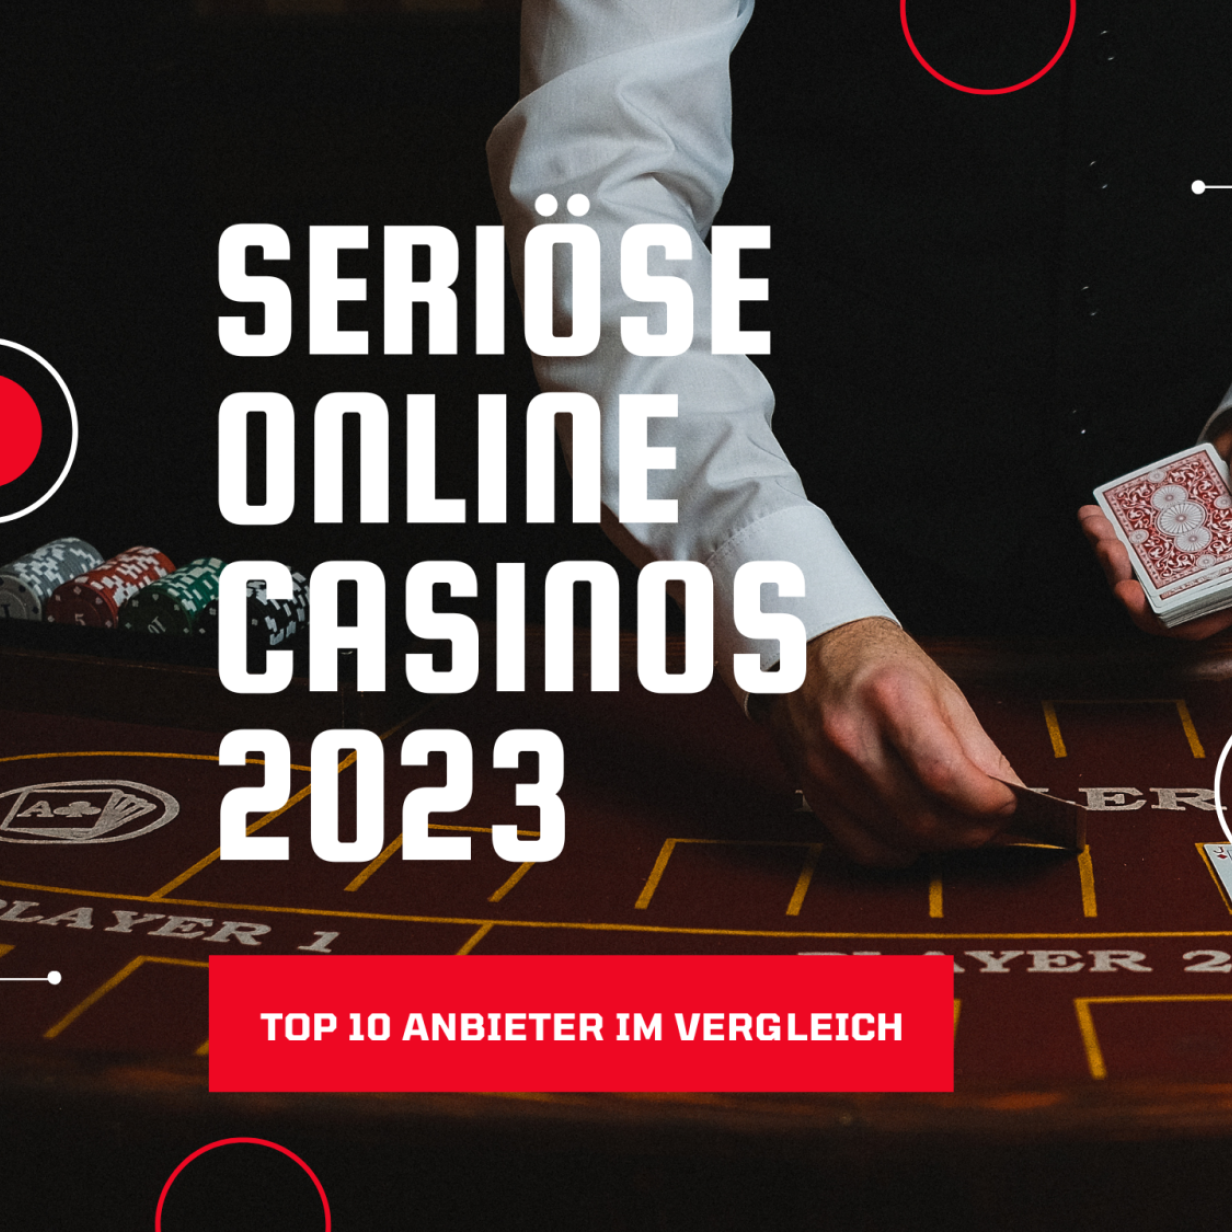 Online Casino Echtgeld Eine unglaublich einfache Methode, die für alle funktioniert